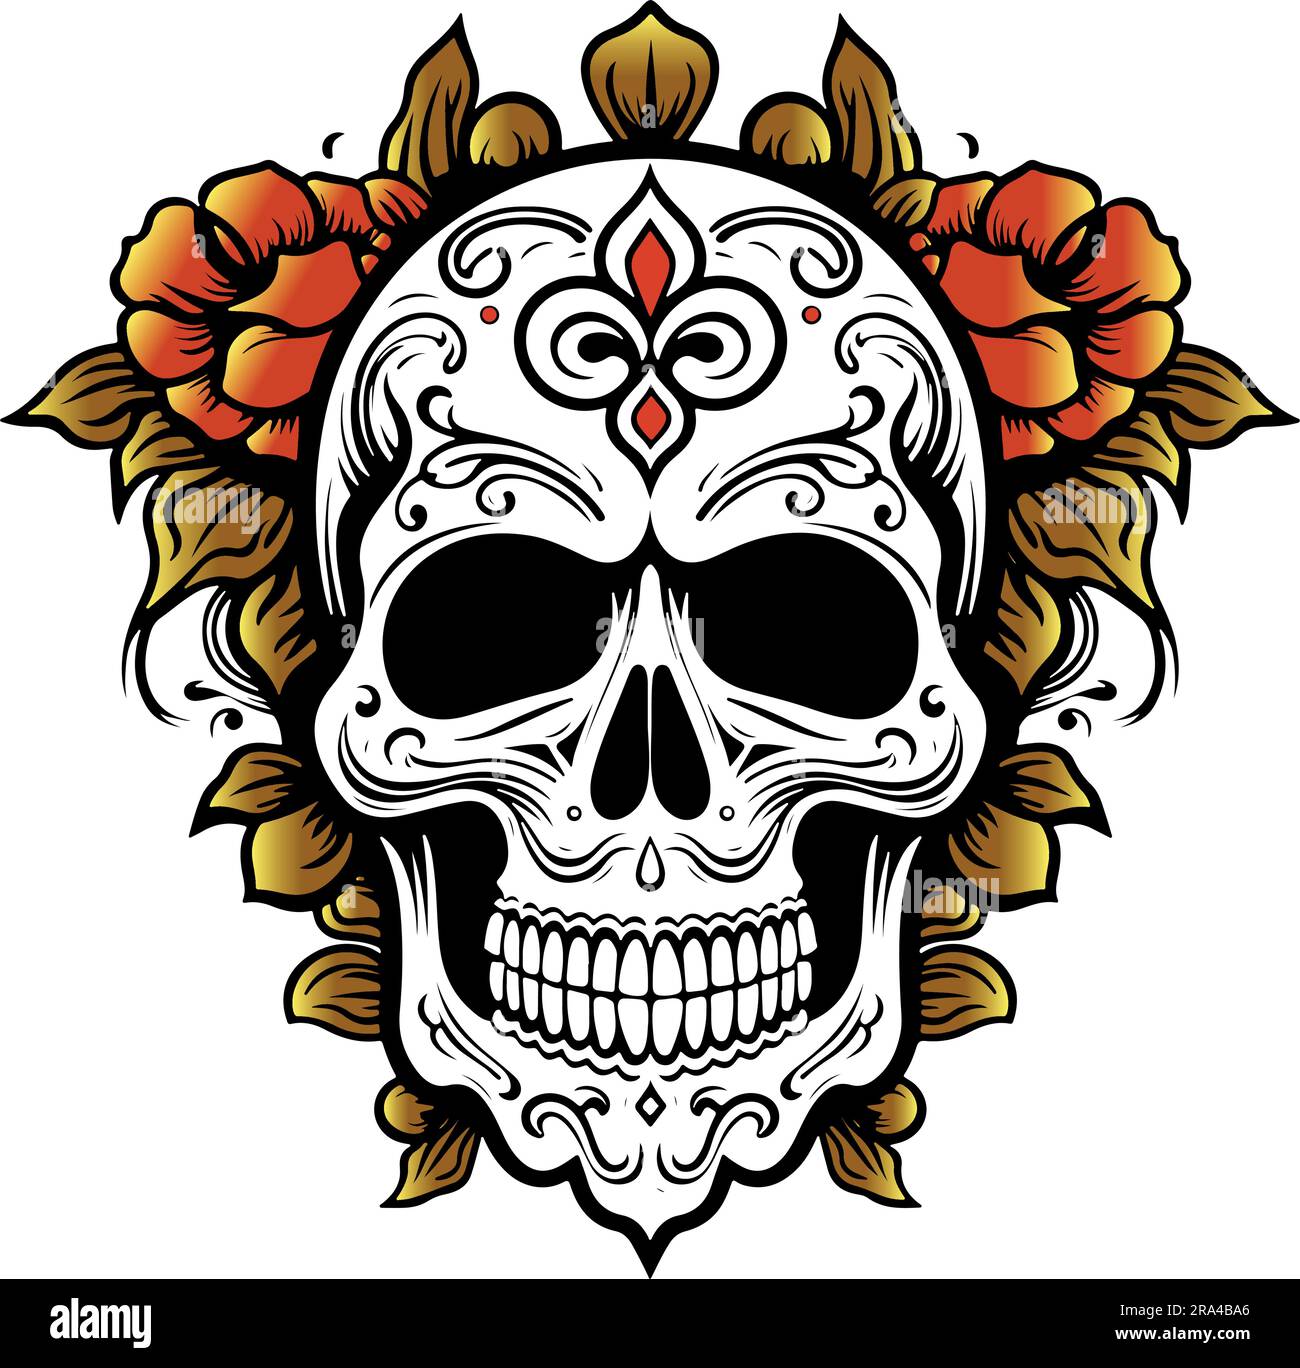 skull with flowers vector art inspired in lo dia de los muertos Stock Vector